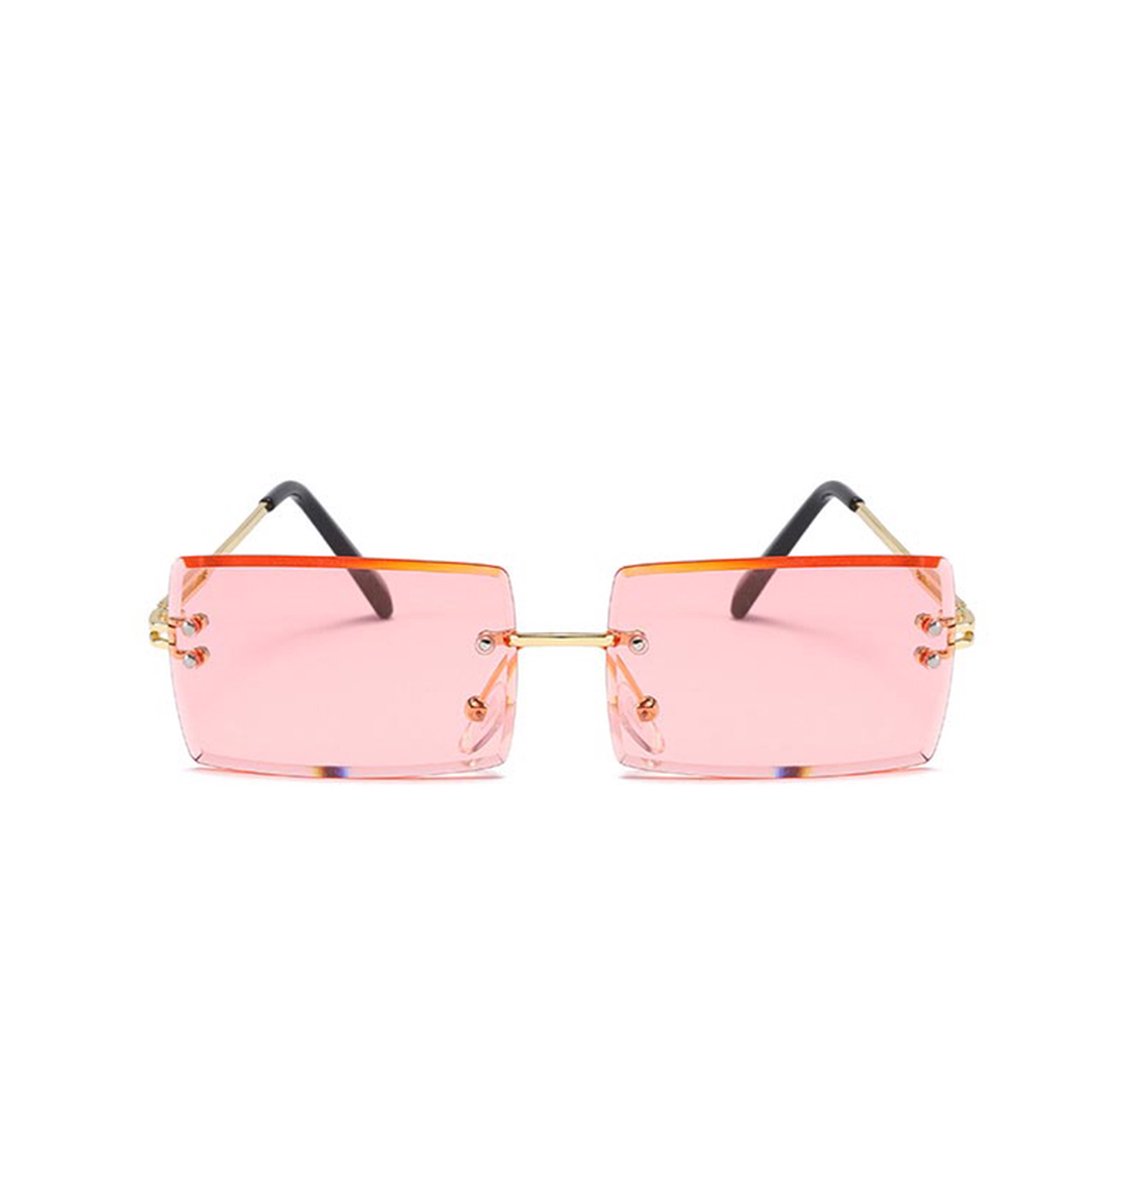 Freaky Glasses - Zonnebril rechthoekig - Festivalbril - Bril - Feest - Glasses - Heren - Dames - Unisex - Kunststof - roze